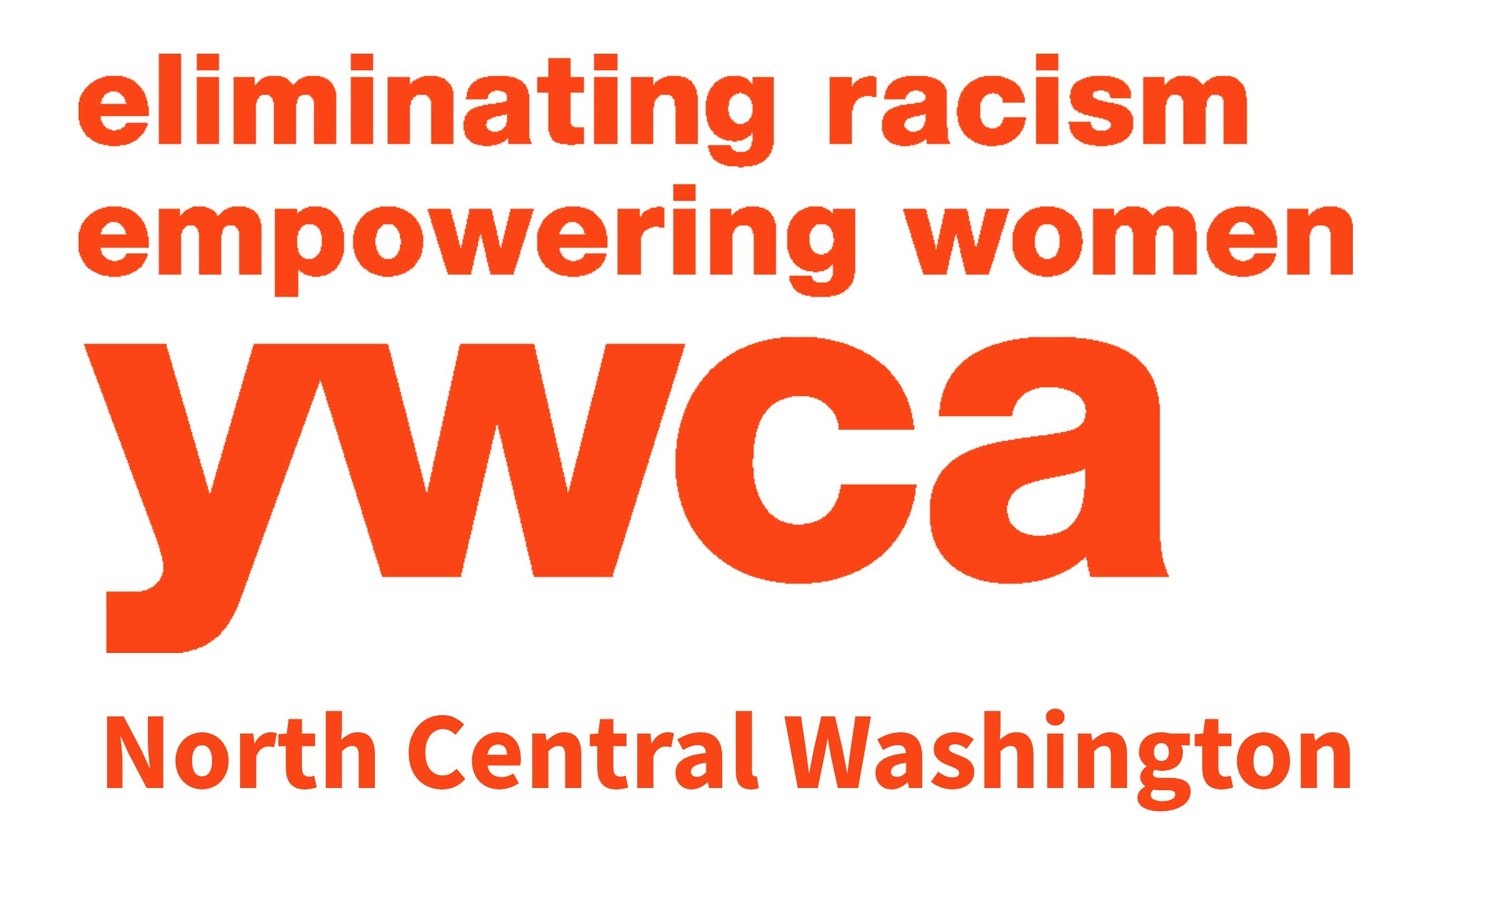 YWCA North Central Washington